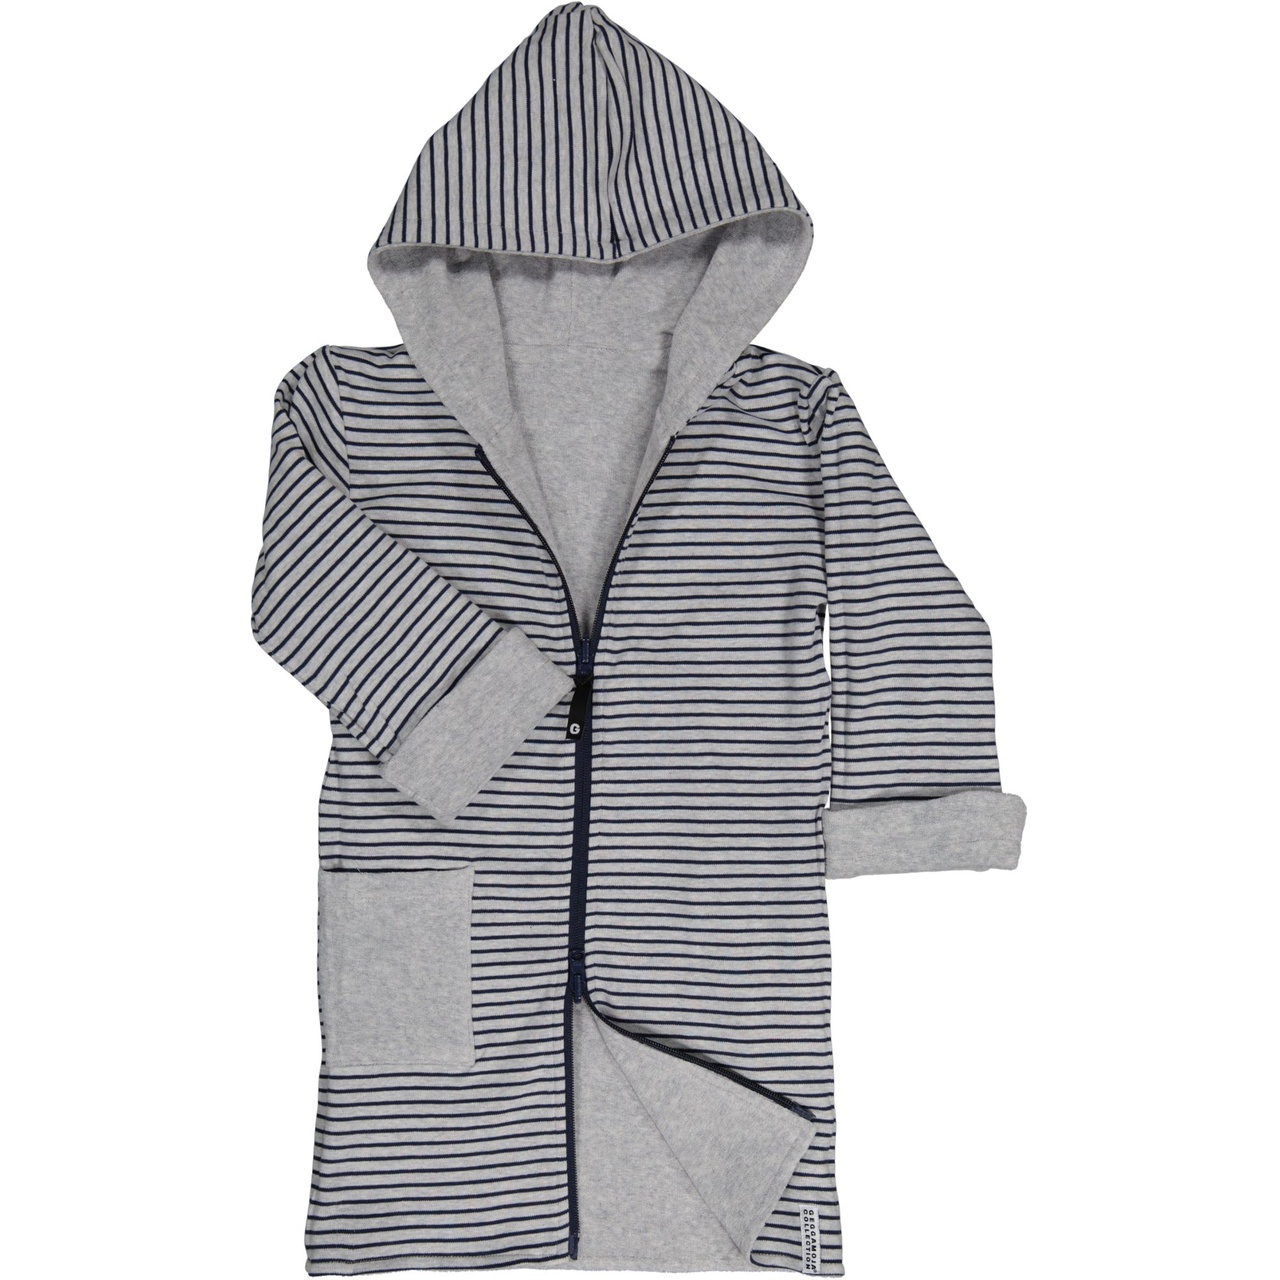 Kids bathrobe Greymel/grey-blue 110/116